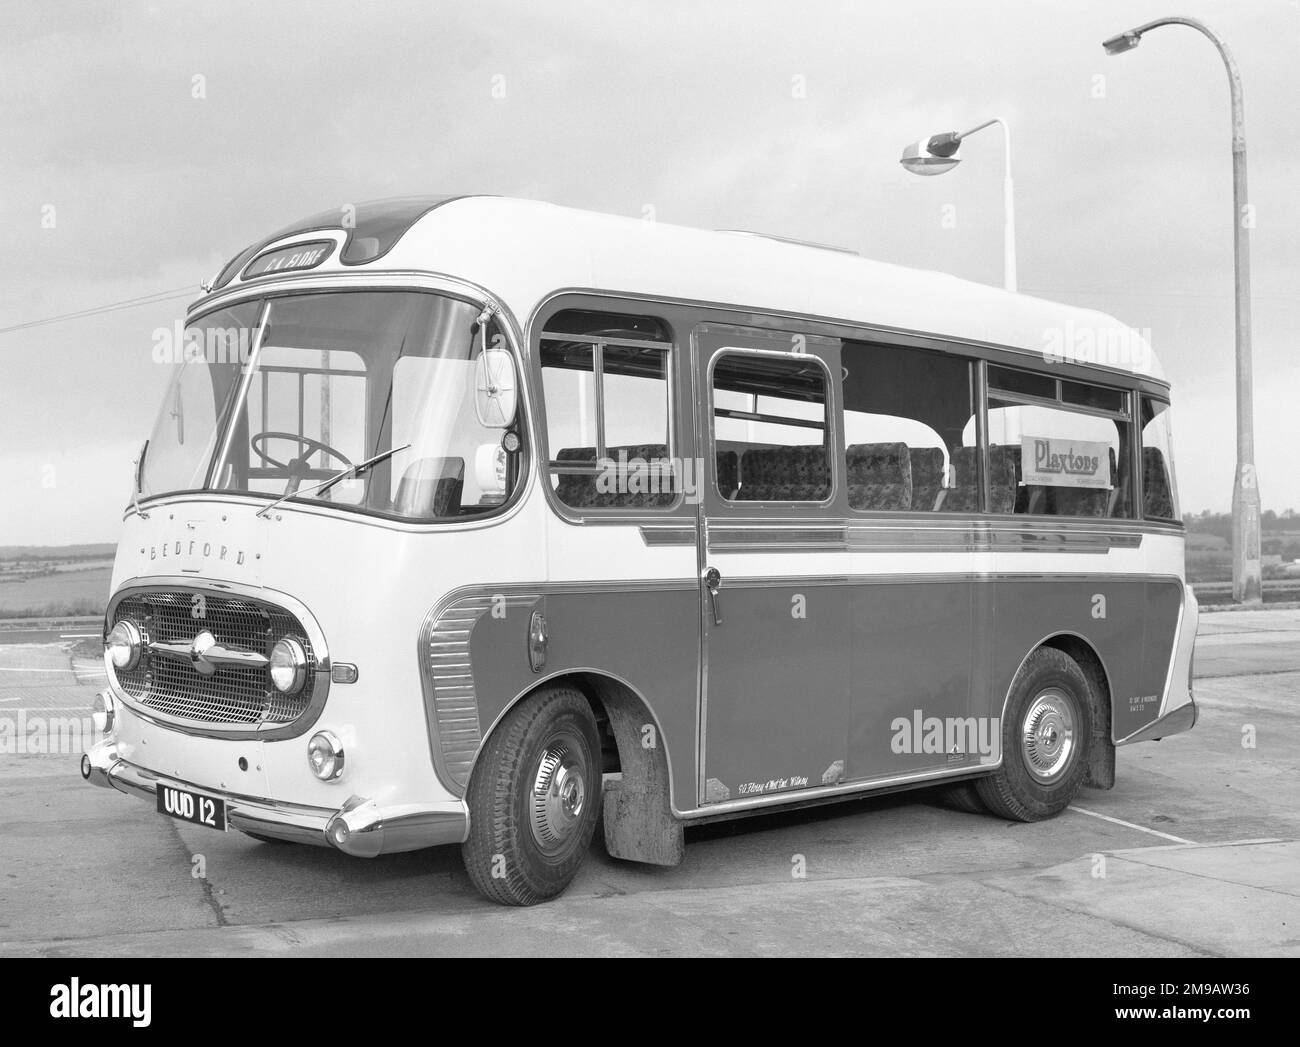 Ein brandneuer Plaxton Consort C20F „UUD 12“, ein Reisebus mit 20 Sitzplätzen (seltsamerweise für 8 Passagiere gekennzeichnet) auf einem Bedford J2SZ7-Fahrgestell. UUD 12 ist bereit für die Lieferung nach G.A. Florey, 4 West End, Witney in Oxfordshire, im Dezember 1961. Dieser Bus war zuletzt im Februar 2014 mit Ecosse Classic Wedding Cars in Glasgow aktiv. Stockfoto